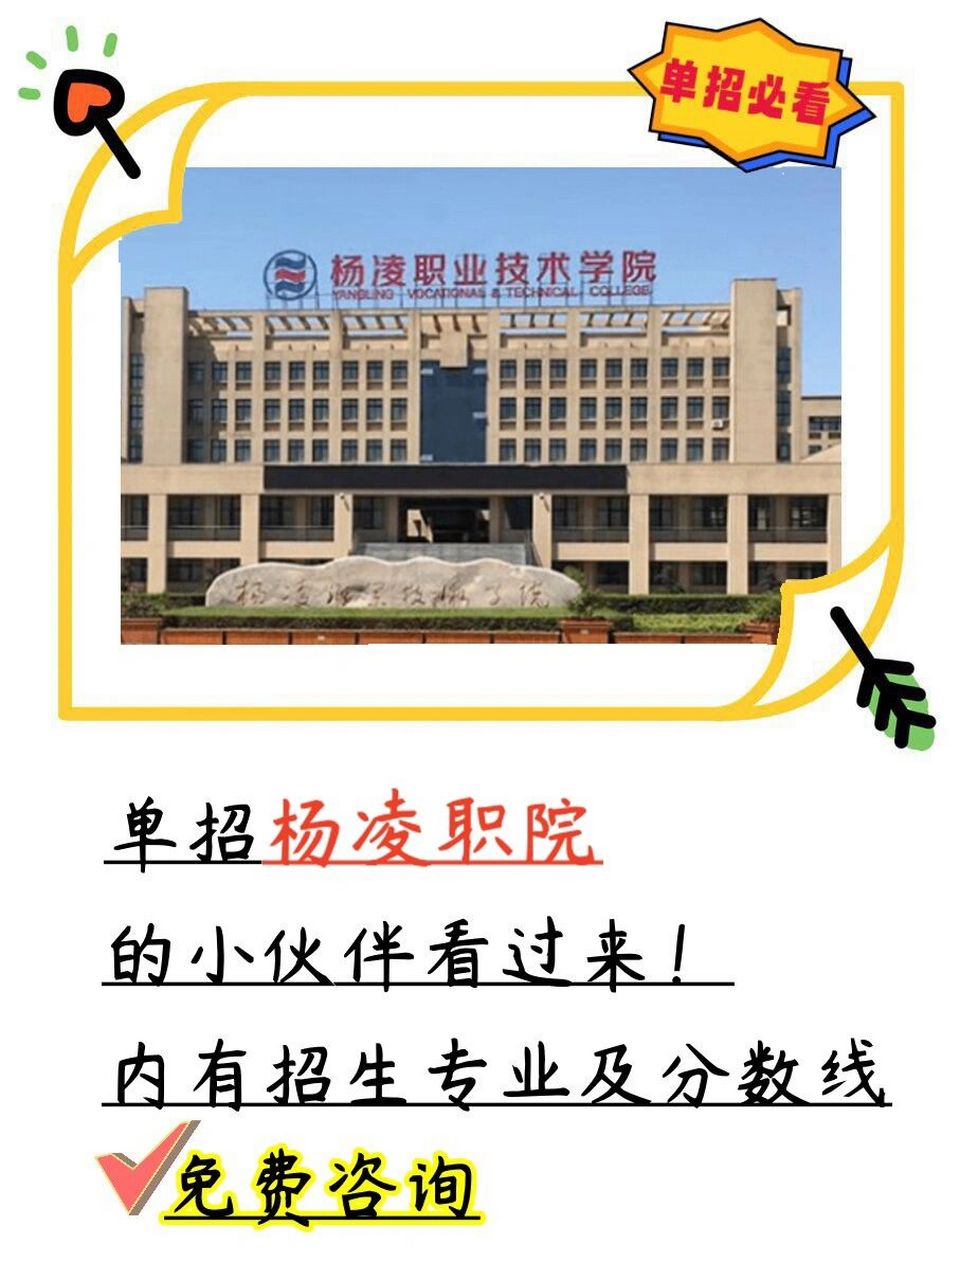 杨凌职业技术学院logo图片